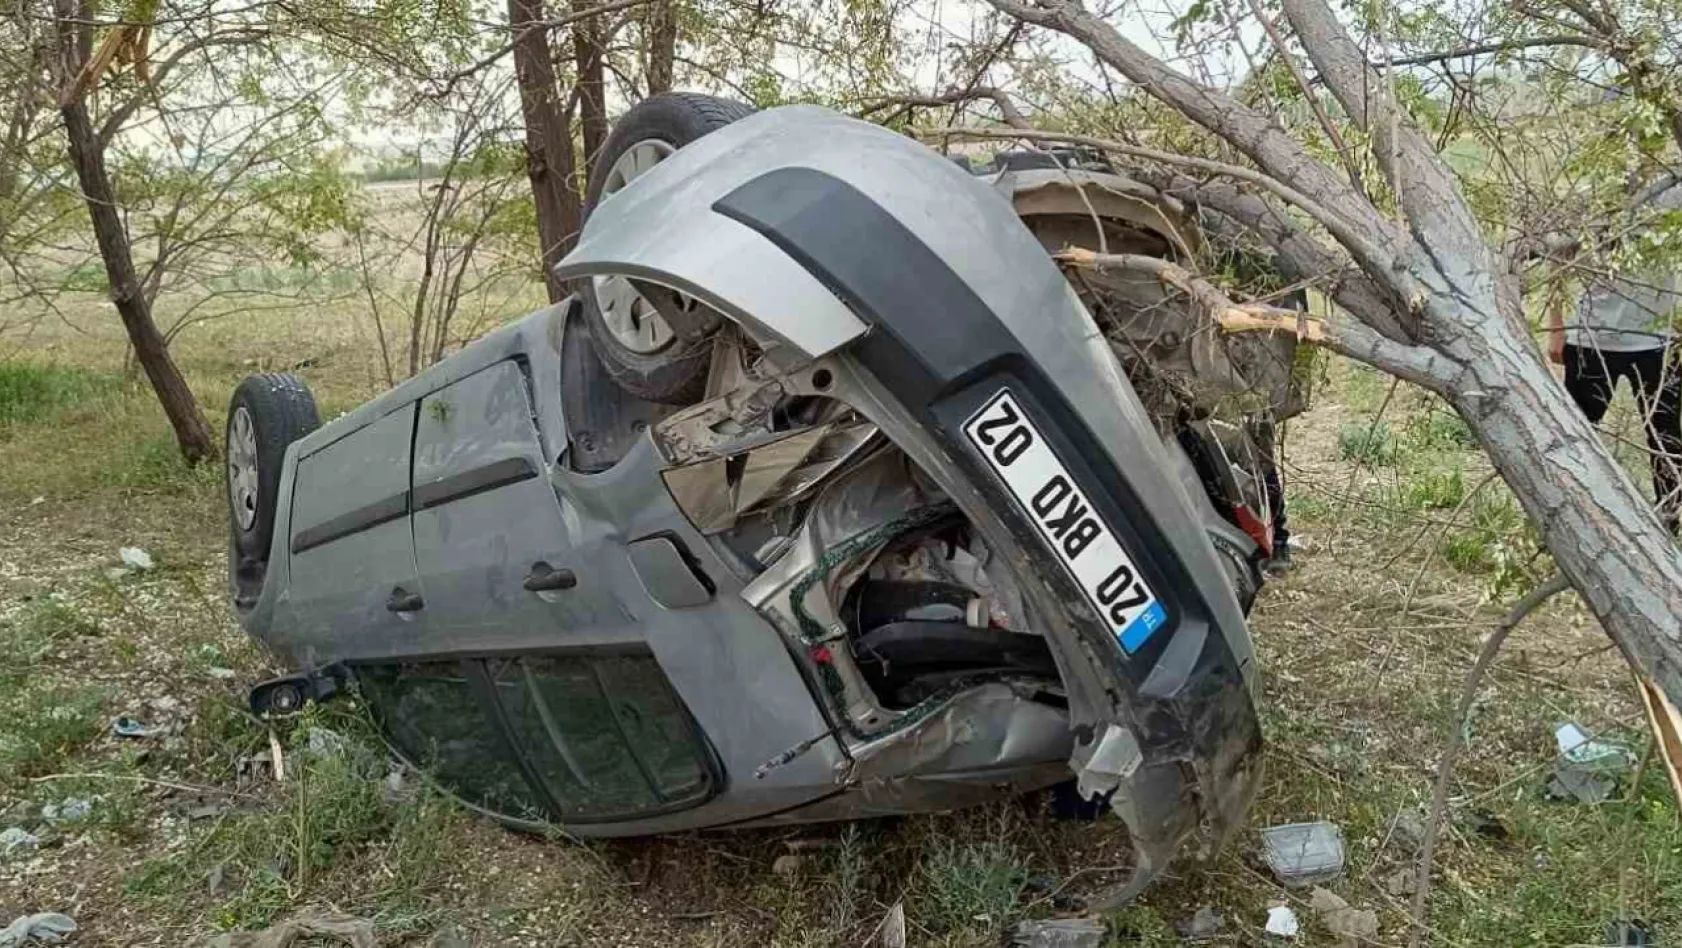 Denizli'den Mersin'e cenazeye giden aile Konya'da kaza yaptı: 1'i ağır 4 yaralı